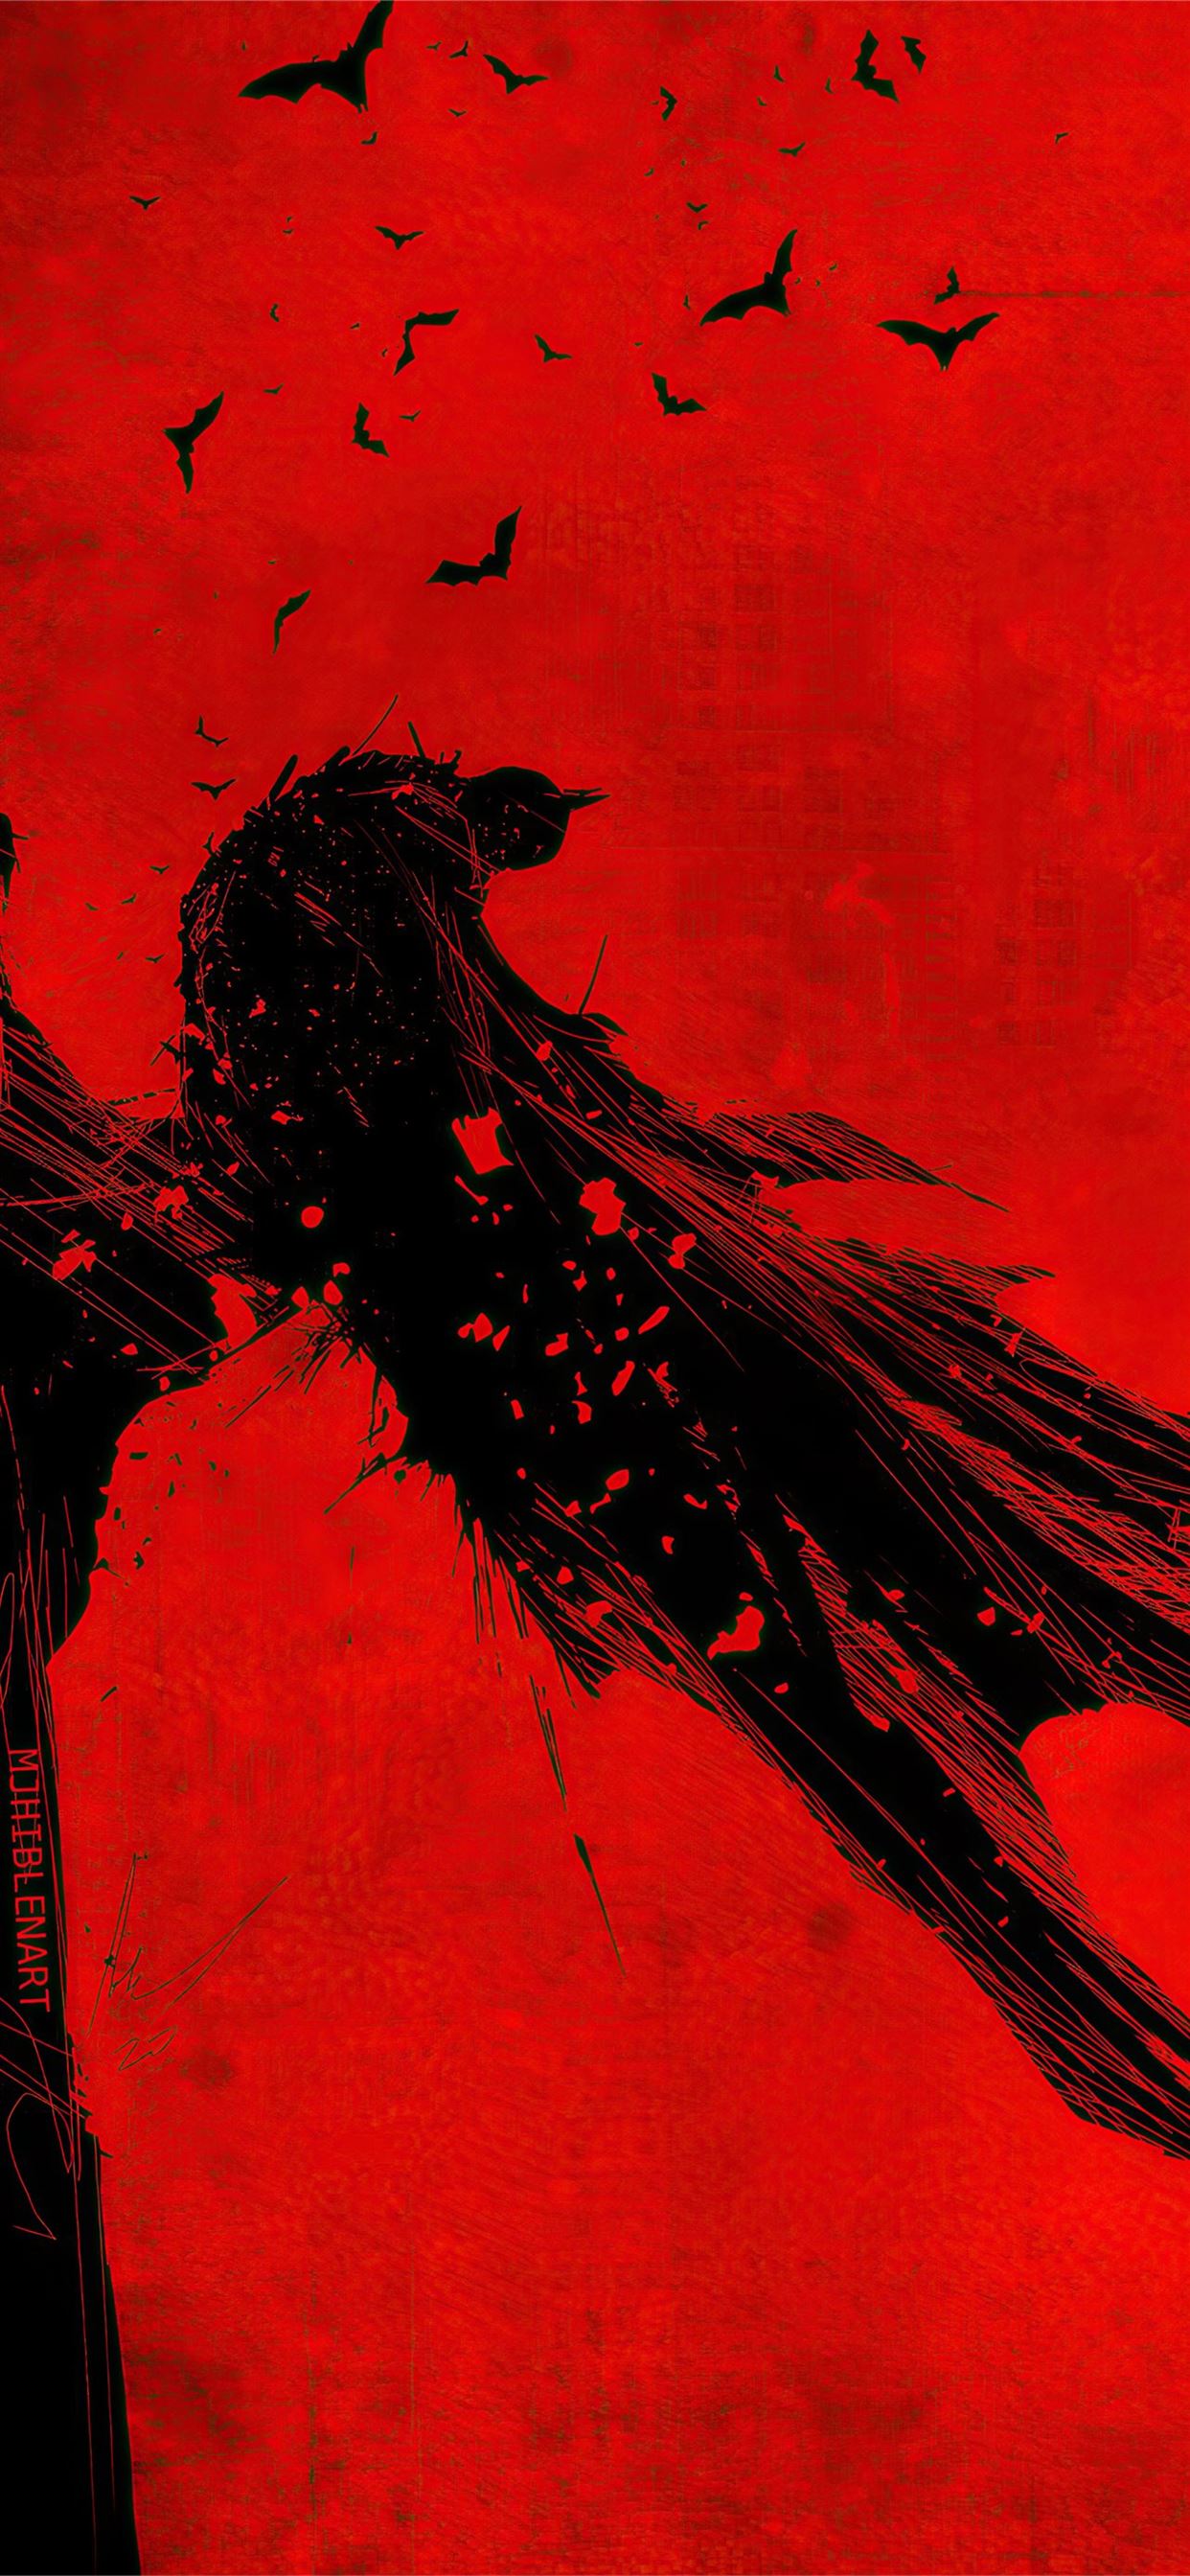 Batman iPhone Wallpaper HD  PixelsTalkNet